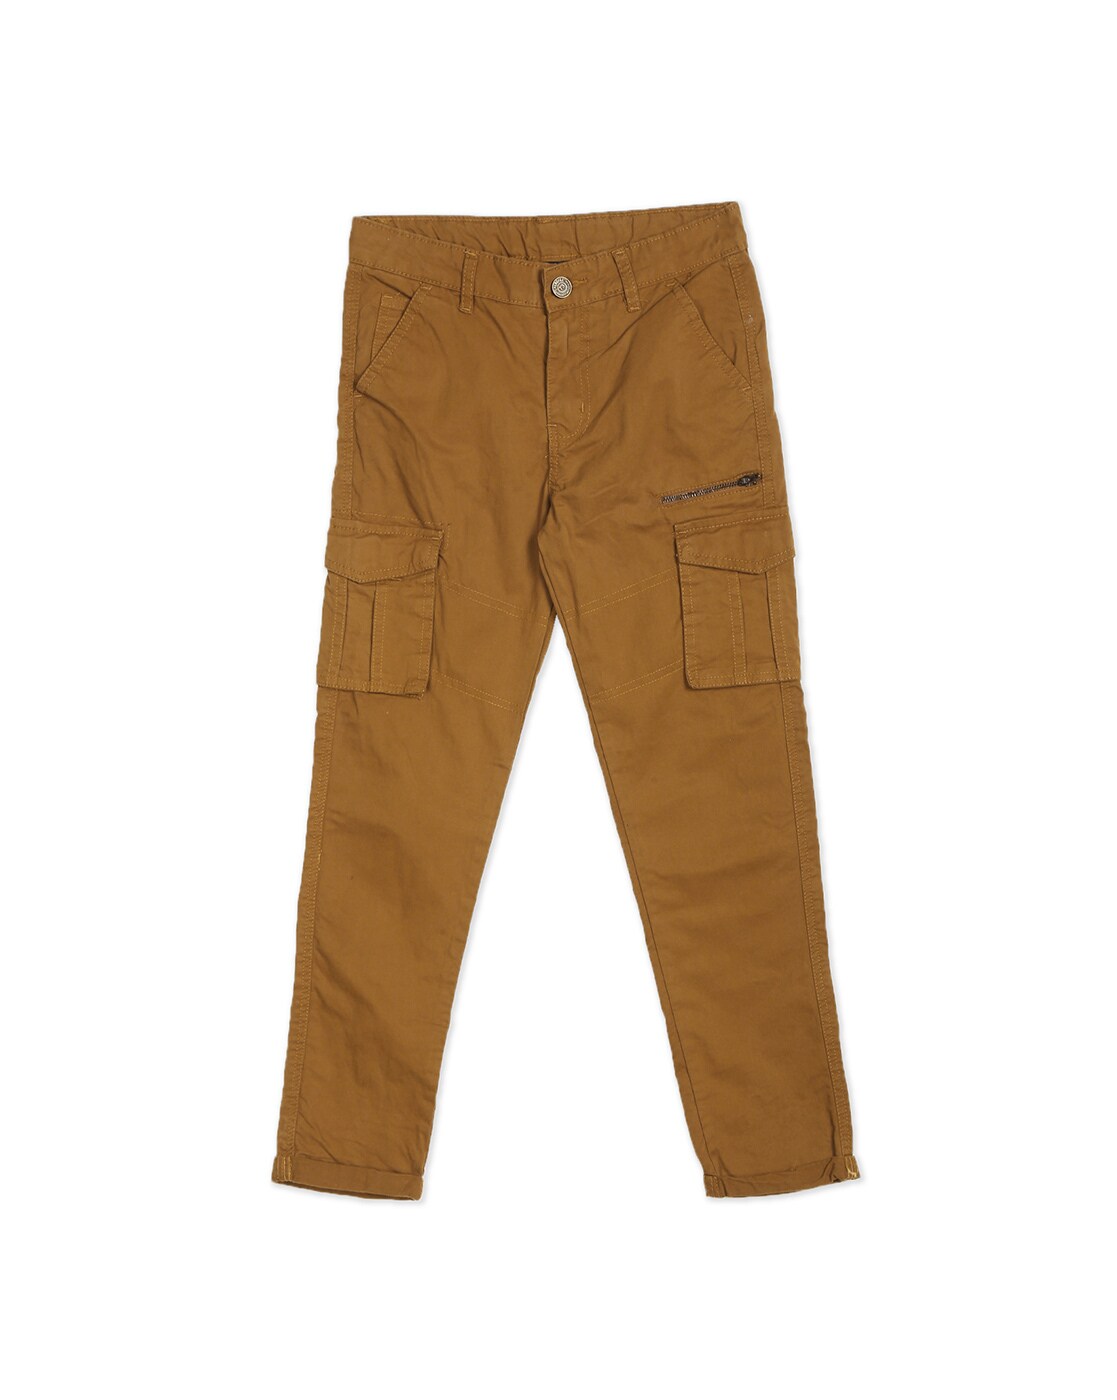 Buy U.S. Polo Assn. Kids Boys Clean Look Jeans - NNNOW.com